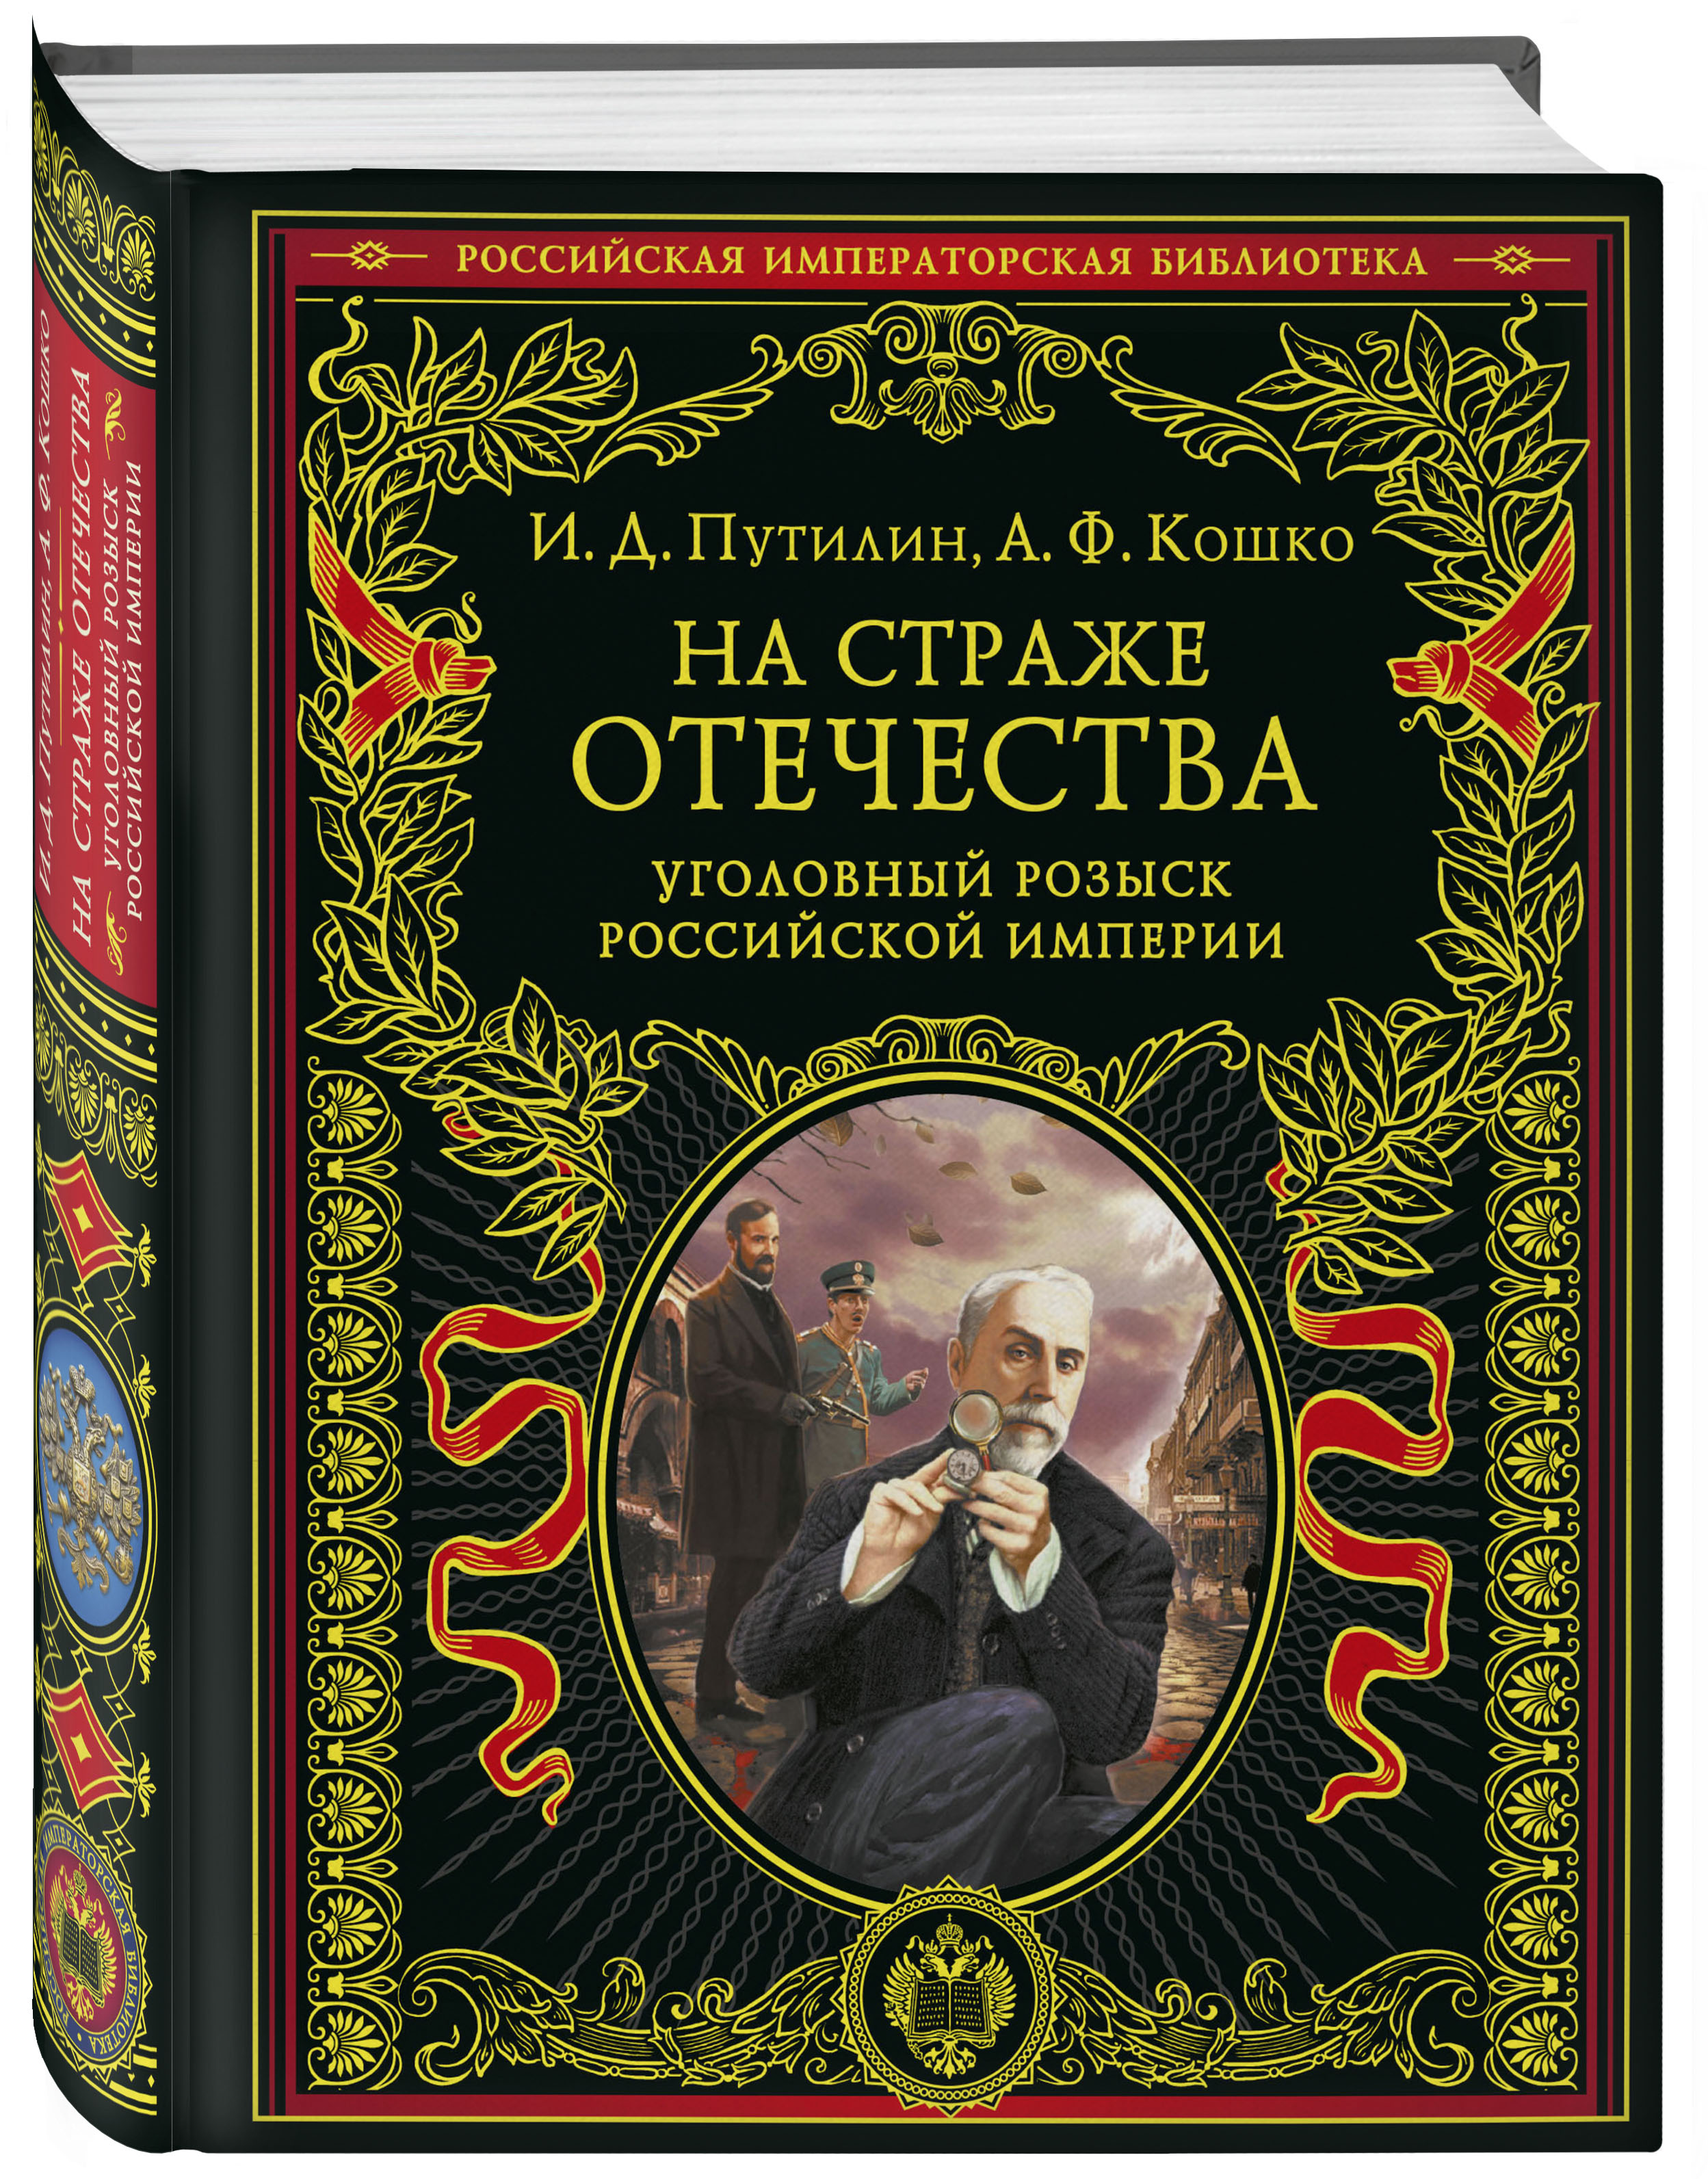 На страже Отечества: Уголовный розыск Российской империи (переиздание)